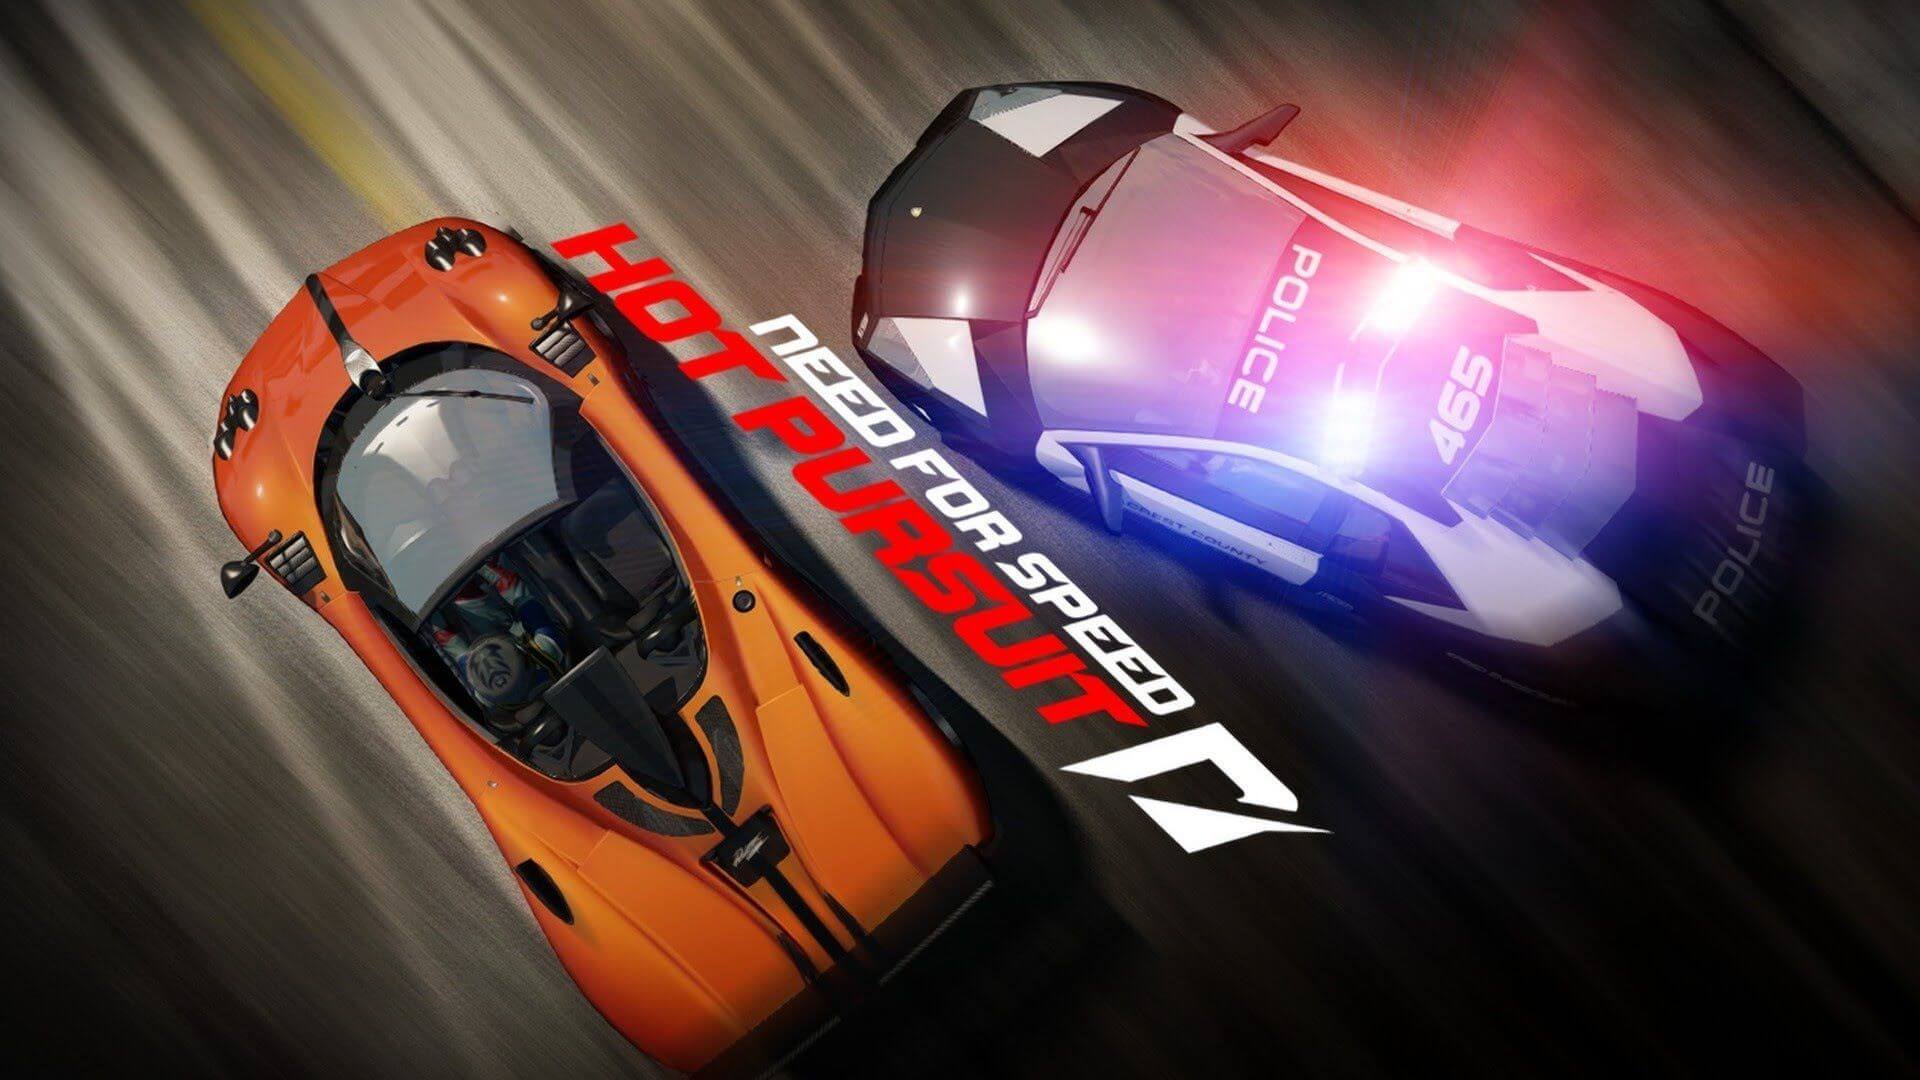 دانلود بازی Need For Speed Hot Pursuit Remastered برای PC